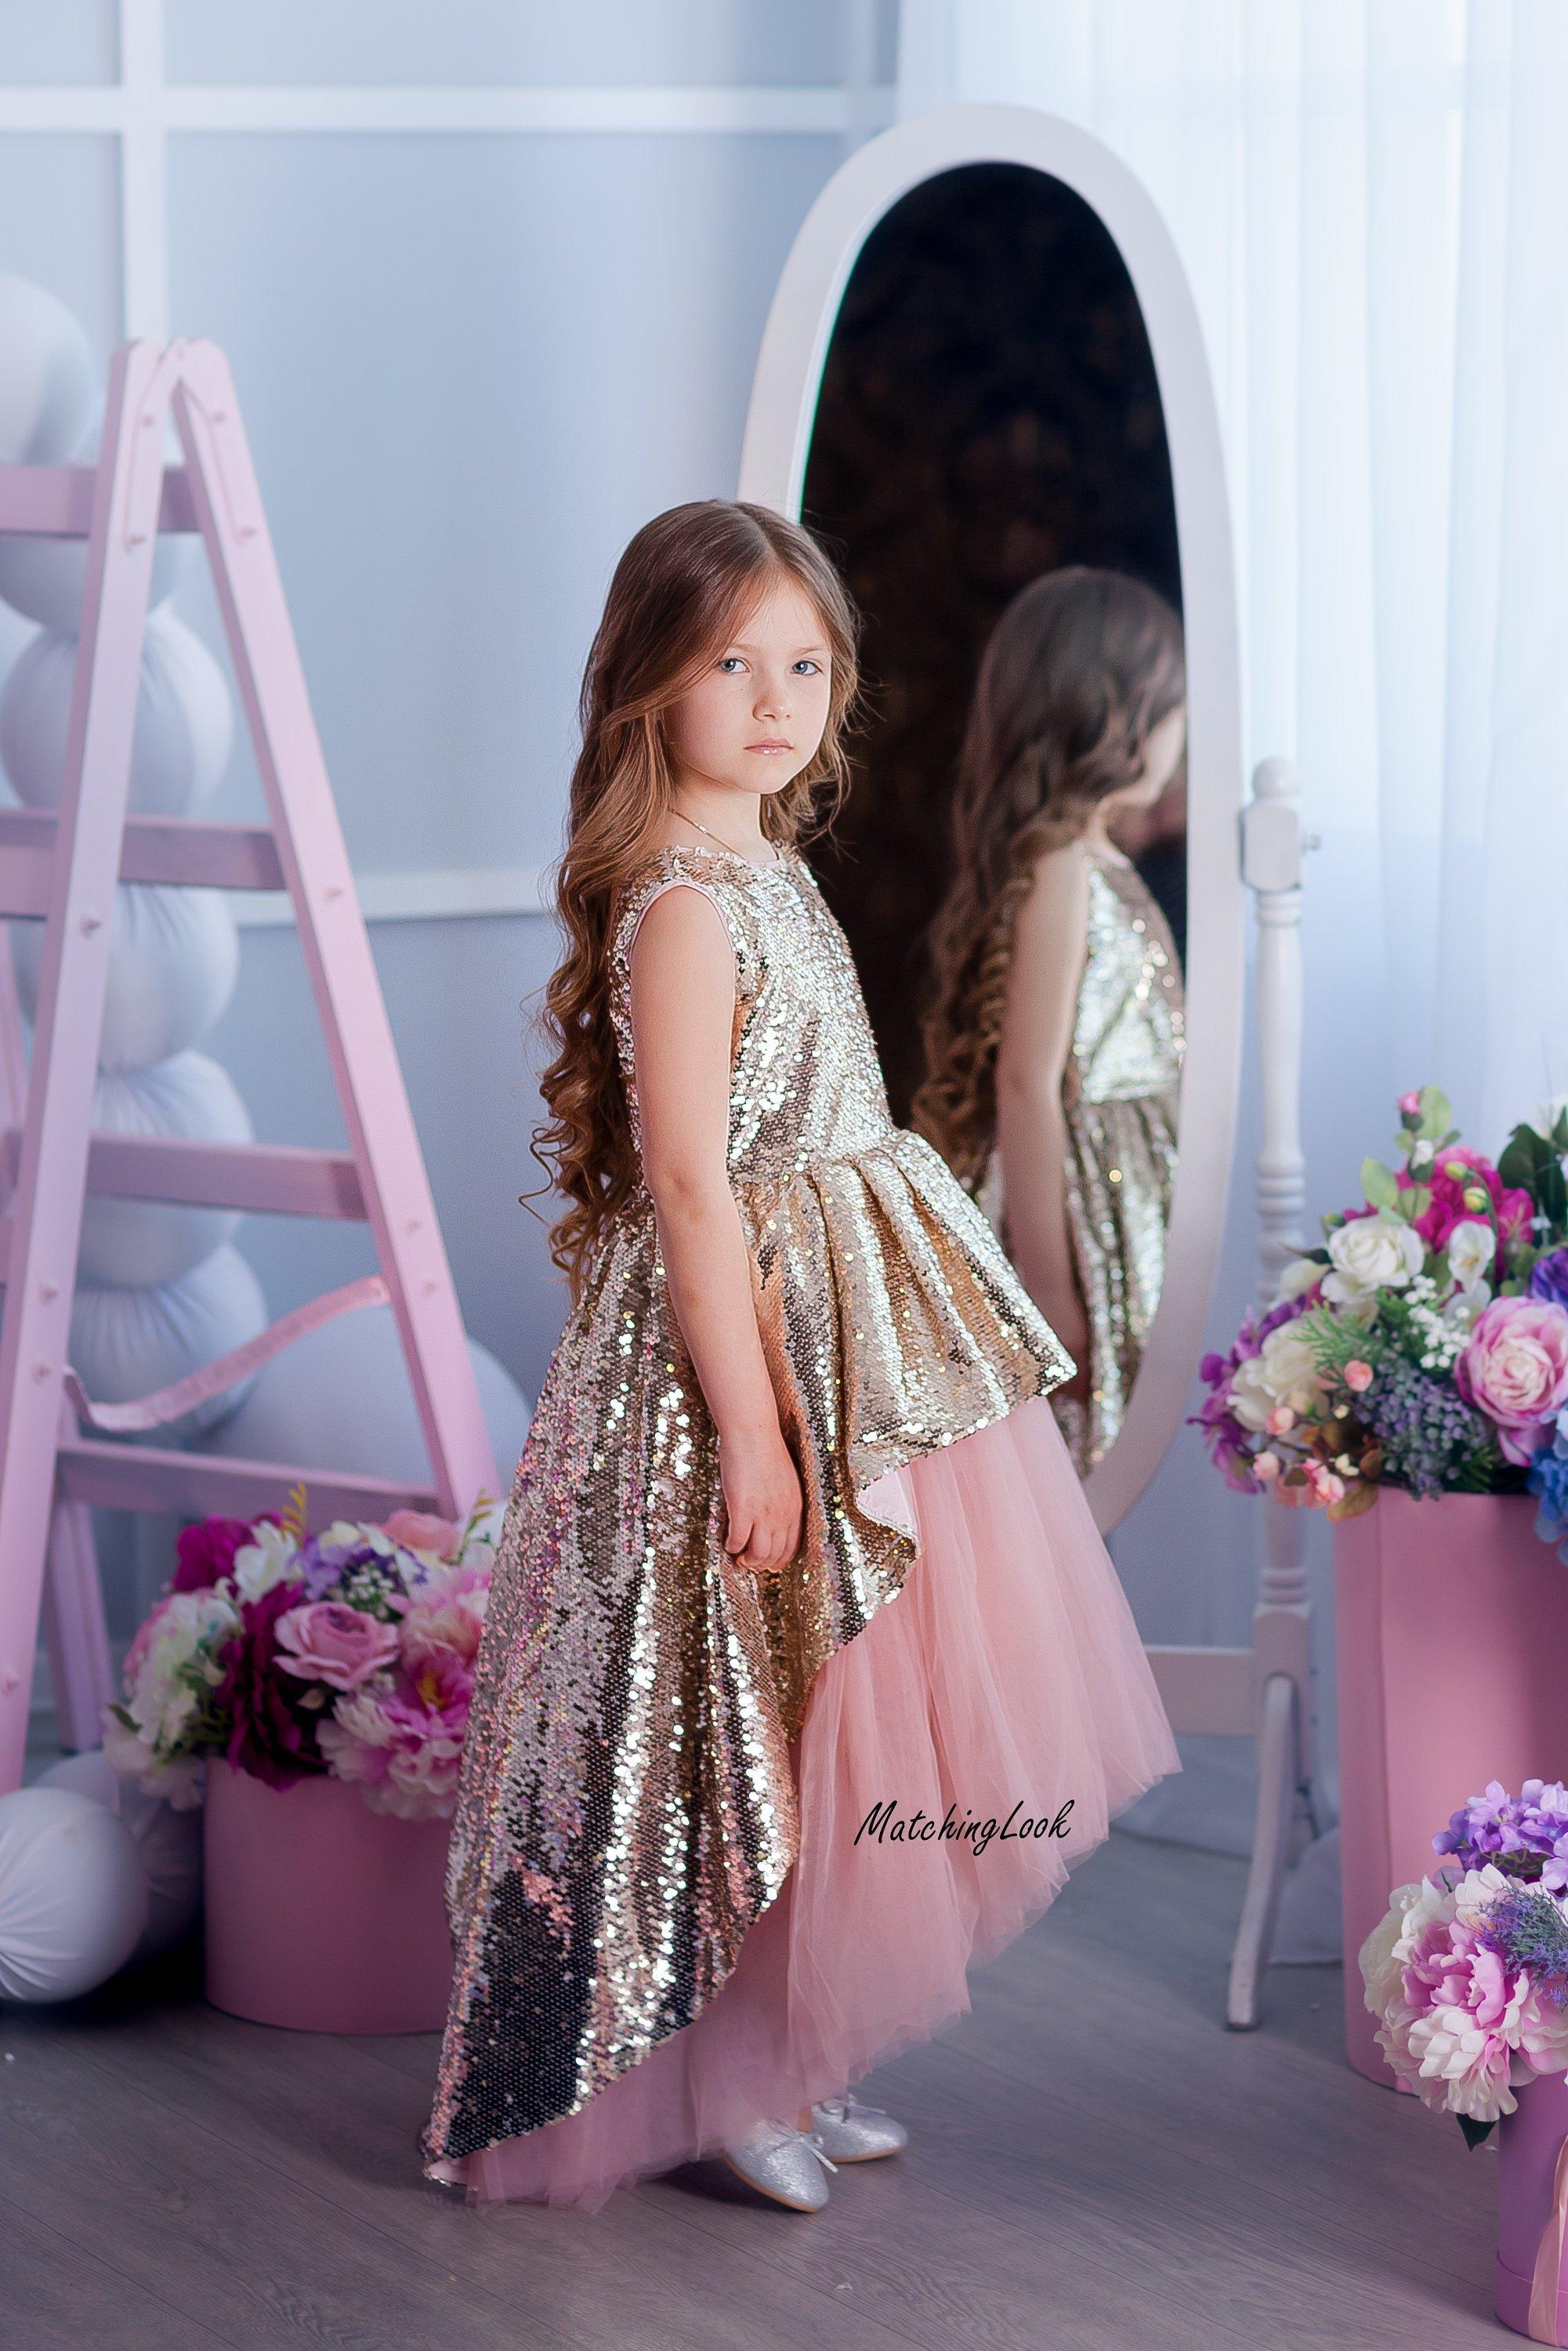 Cute Evening Kid Dresses Girls Princess Dress Lace Flower Long